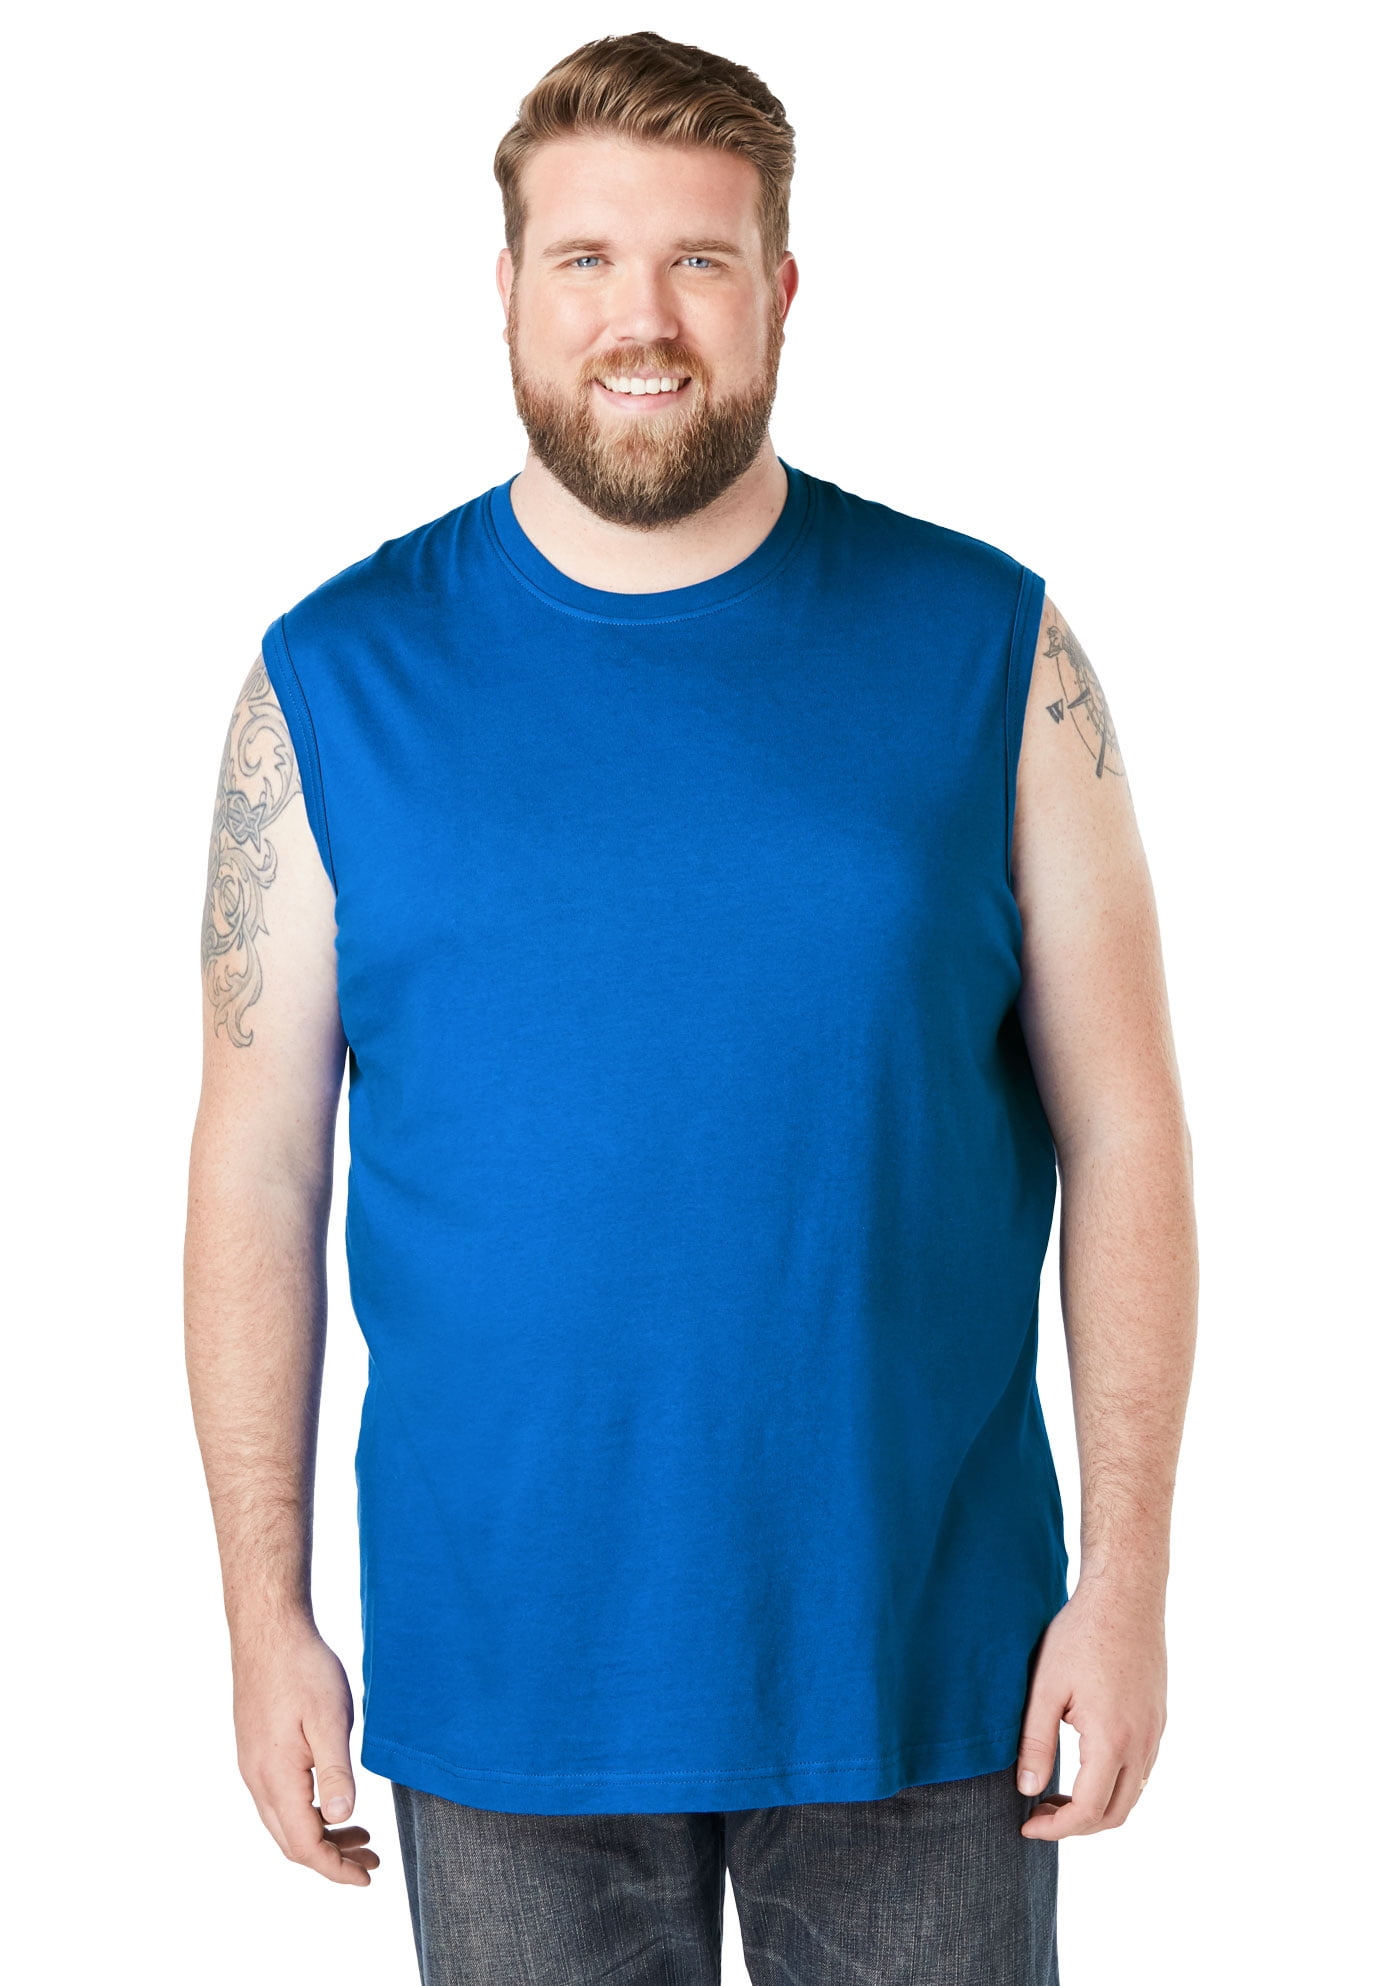 XL Heather Charcoal Tall KingSize Mens Big & Tall Lightweight Muscle T-Shirt 